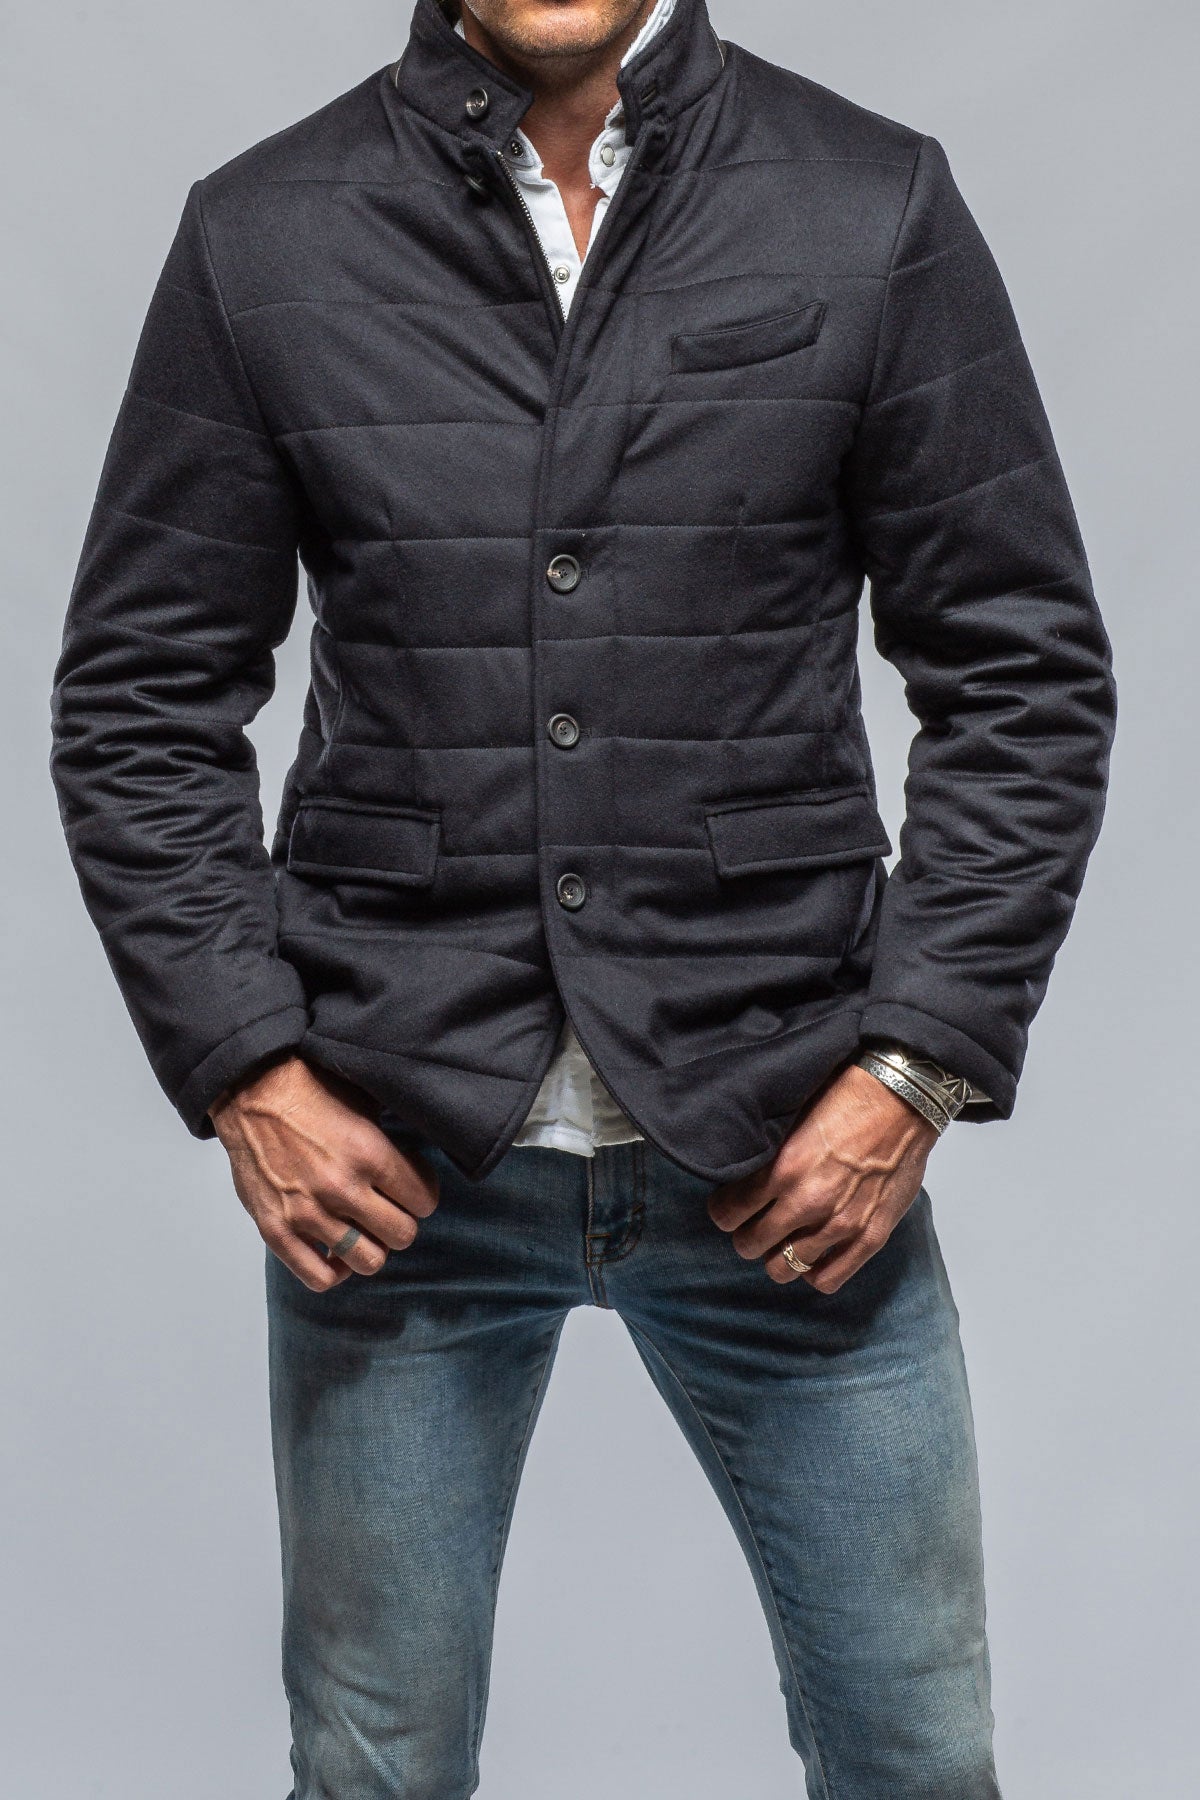 NWT Kired Kiton 100% Cashmere Jacket Size 40 w Loro India | Ubuy